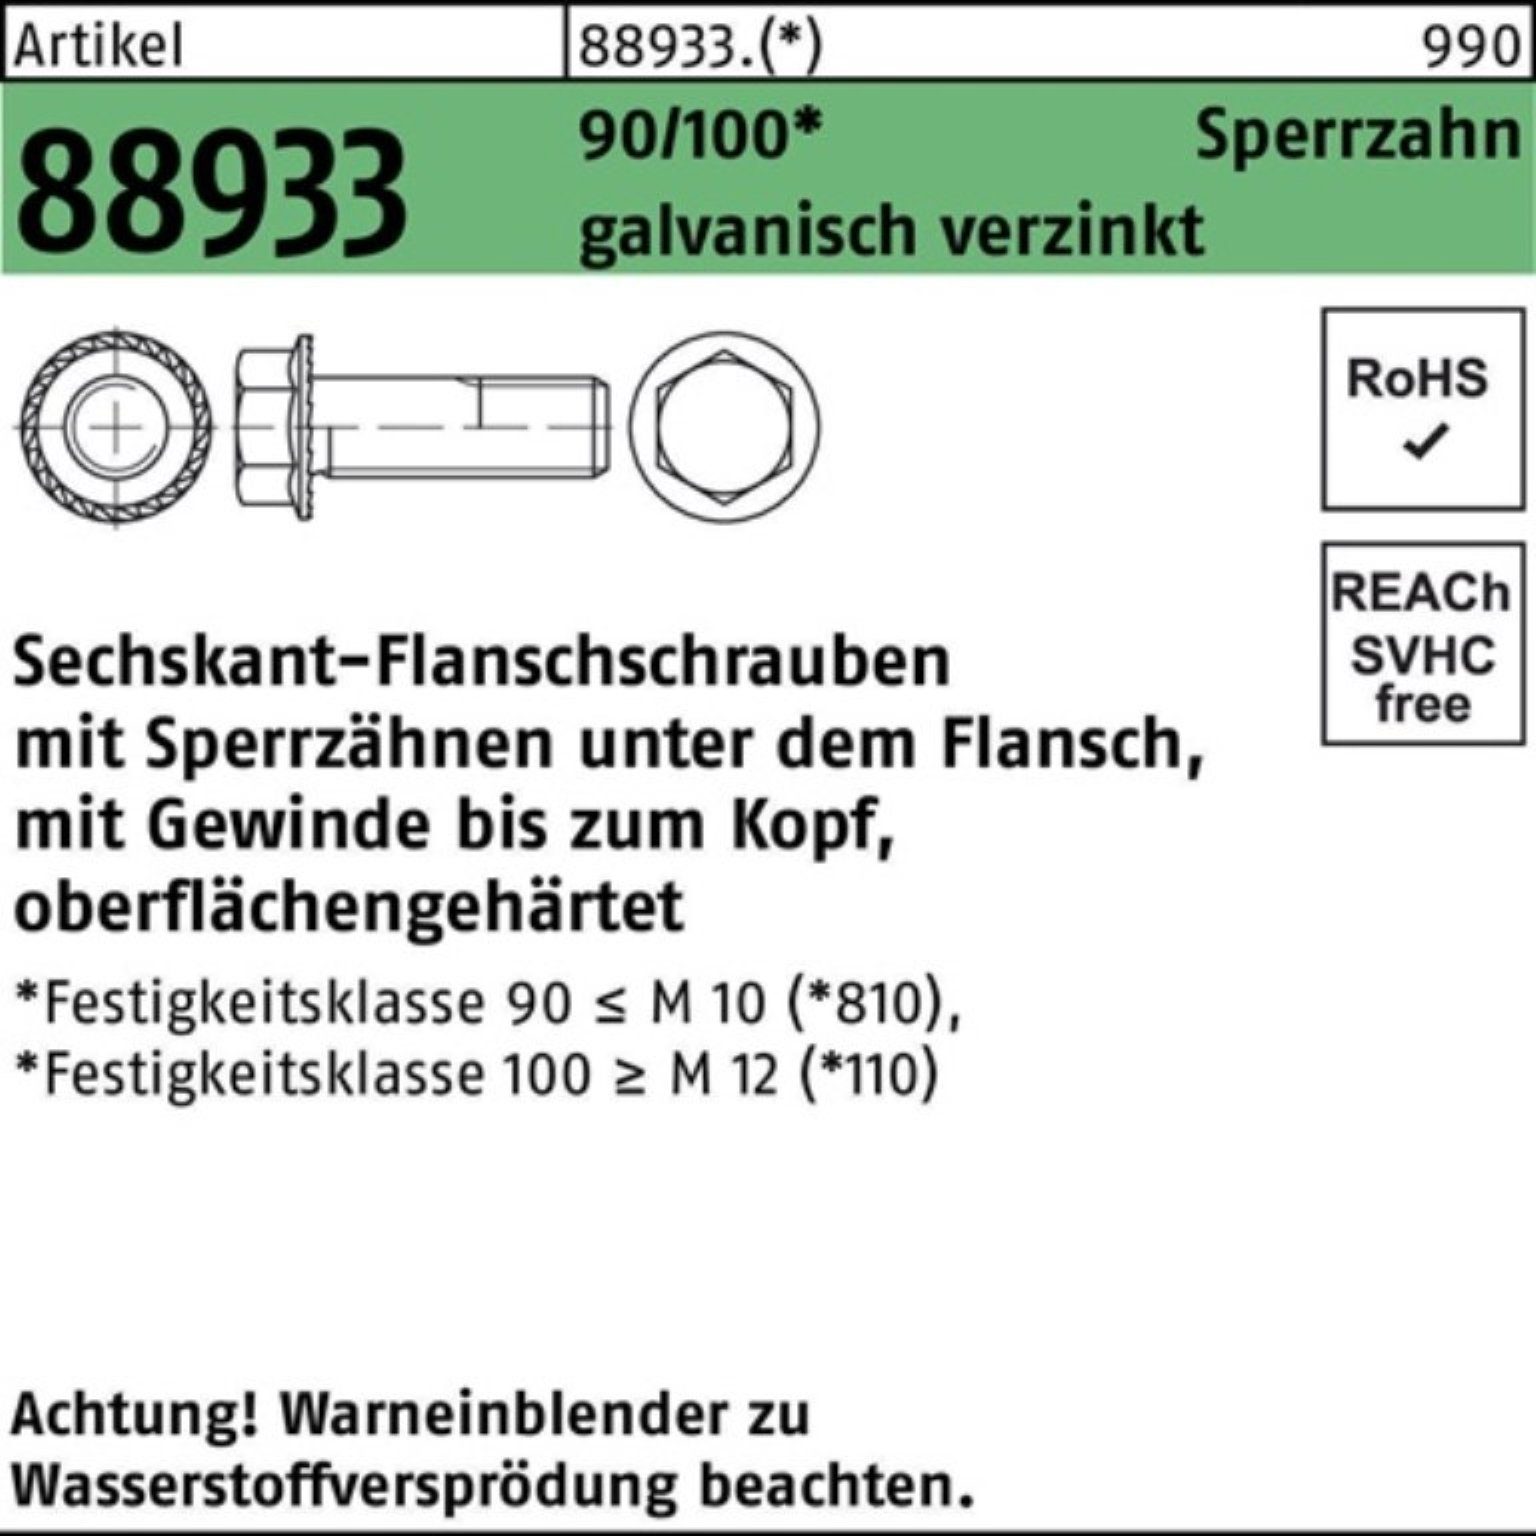 Reyher Sechskantflanschschraube 90/100 88933 ga M6x16 Sperrz. Schraube Pack R VG 500er